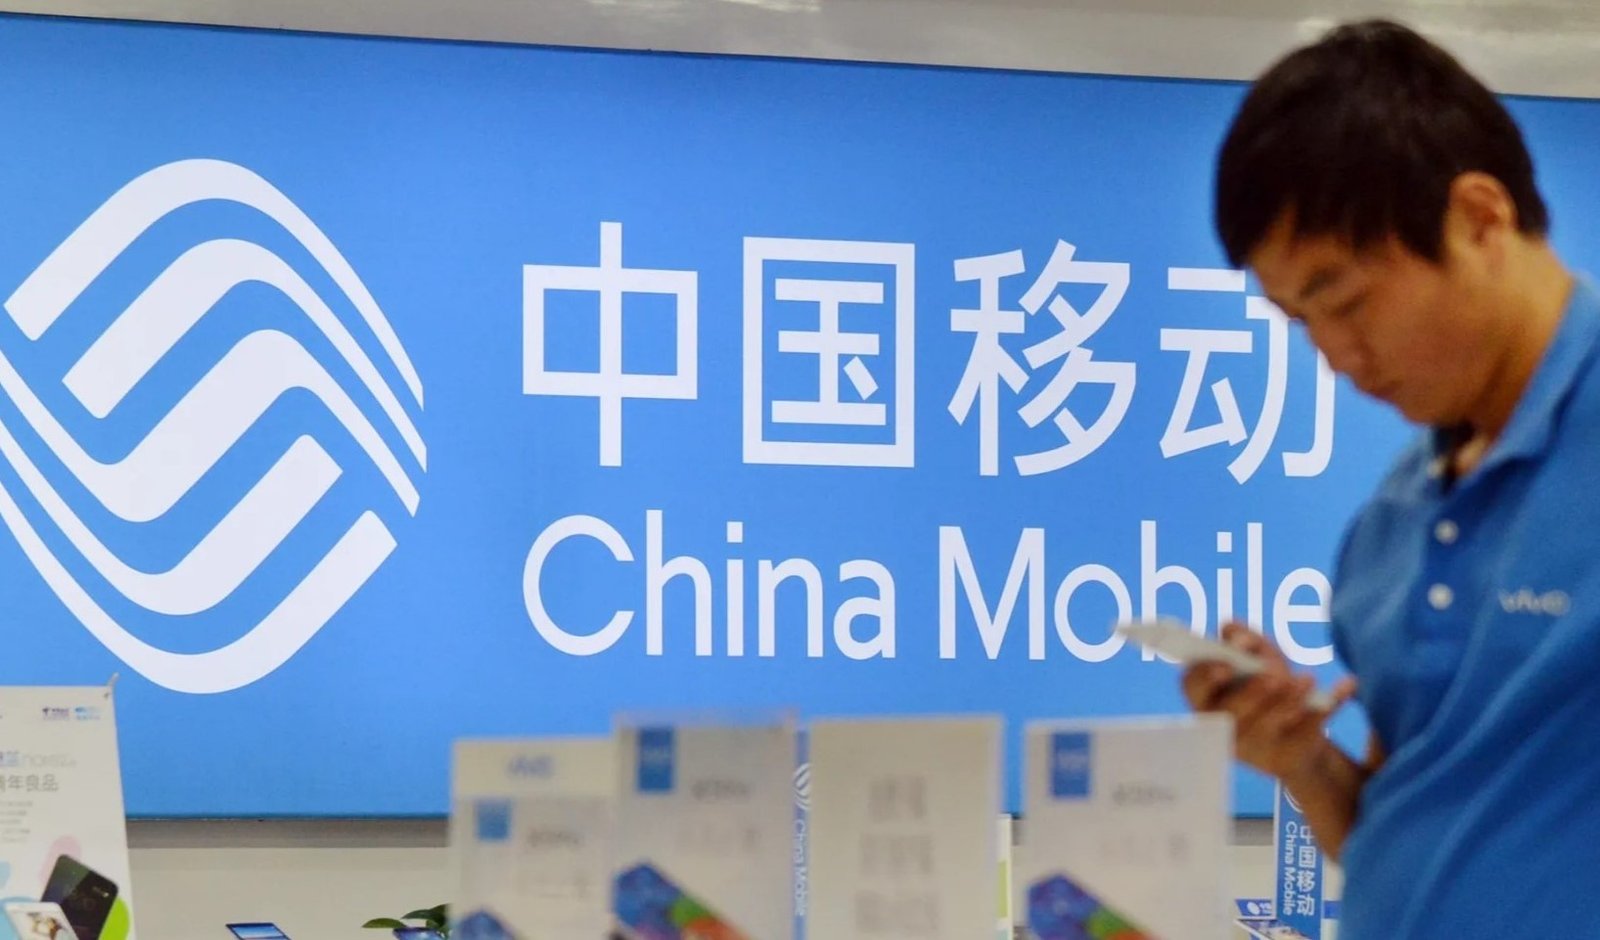 China Mobile Marketing Mix